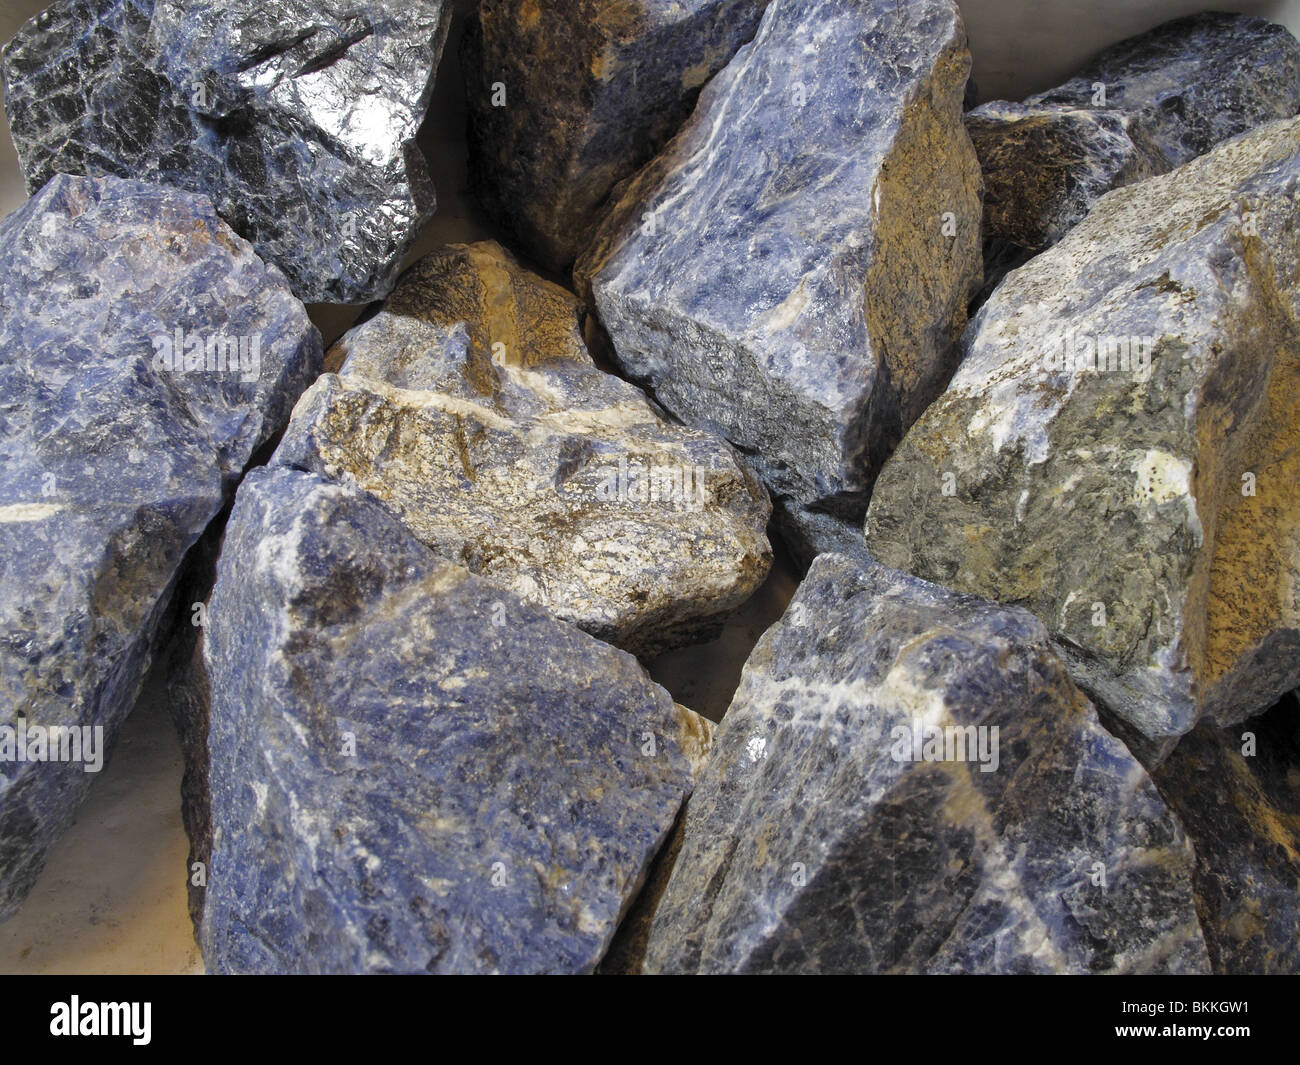 Recolección de materias minerales de piedras semi-preciosas Sodalita (Silicato de aluminio) de cloruro de sodio Foto de stock